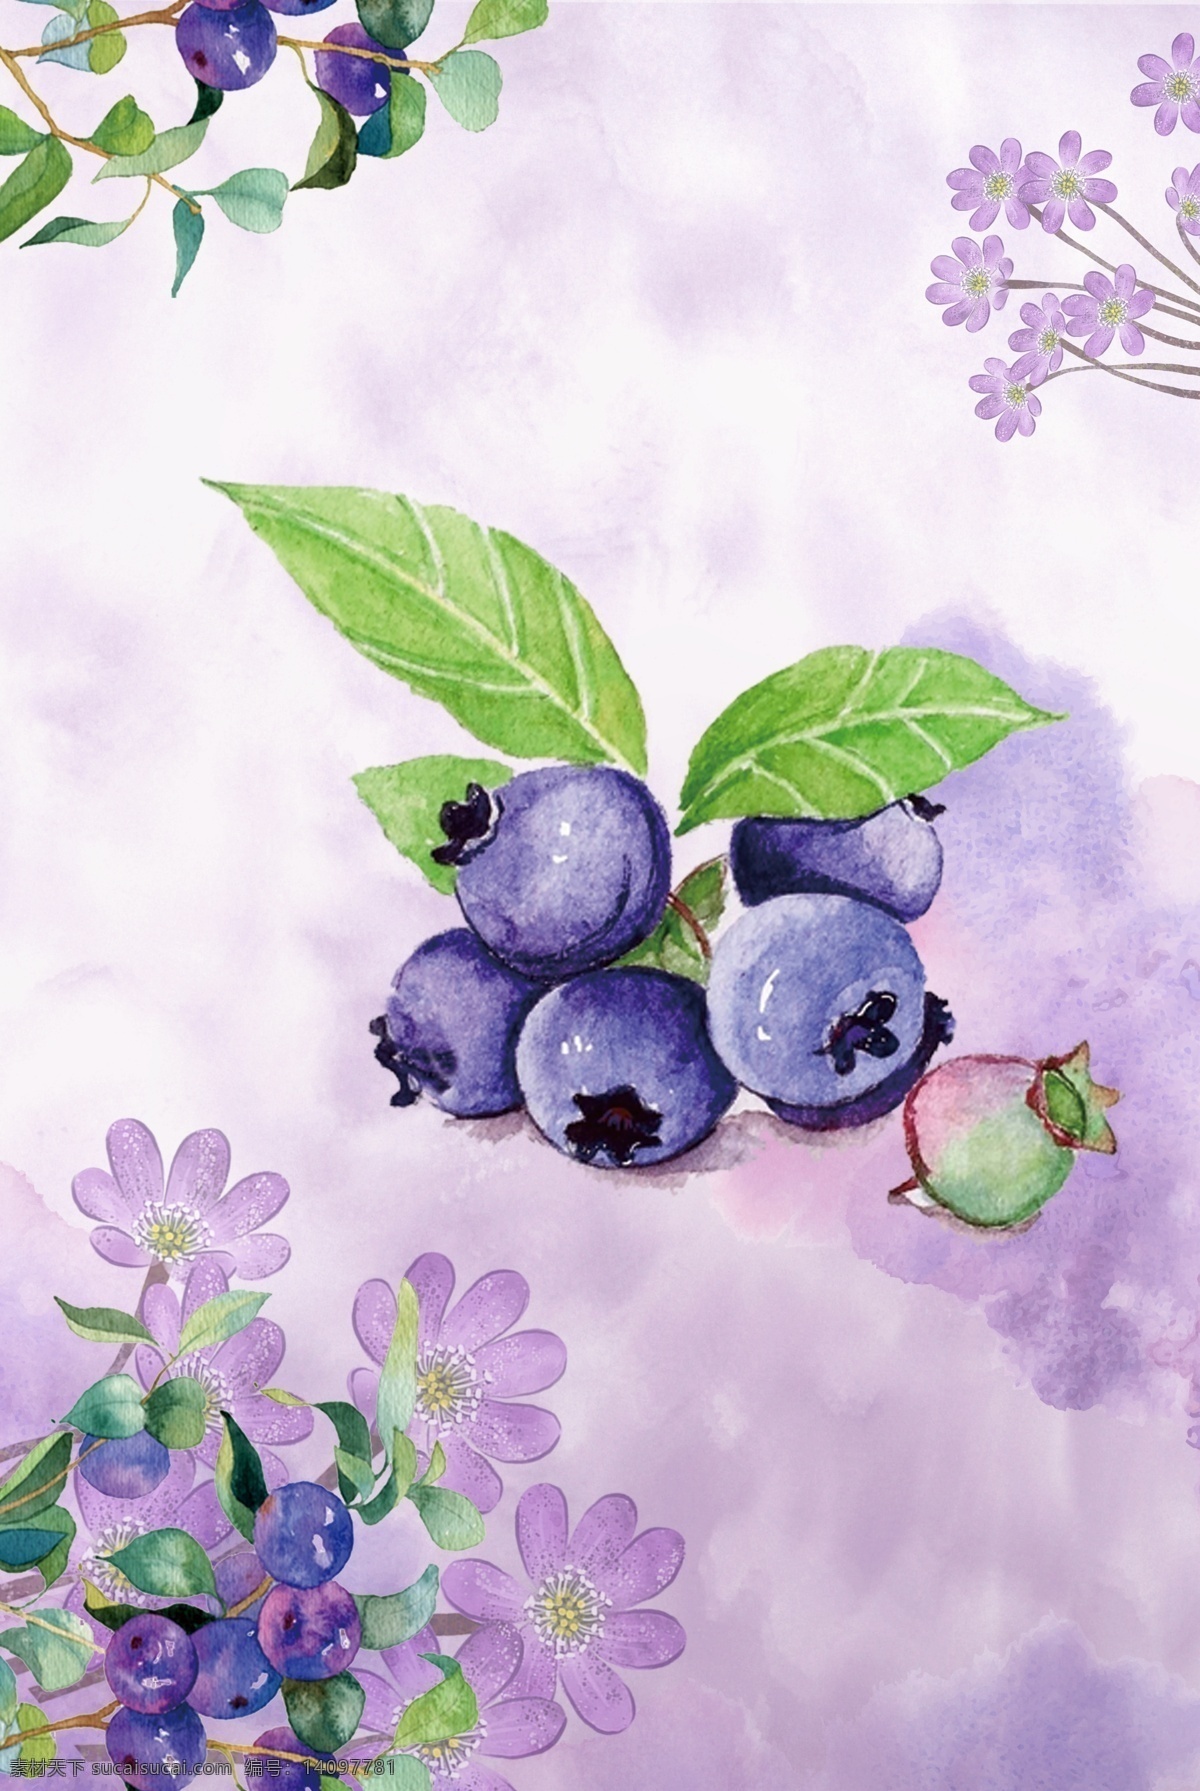 夏日 水果 蓝莓 手绘 背景 夏天 清新 树叶 花朵